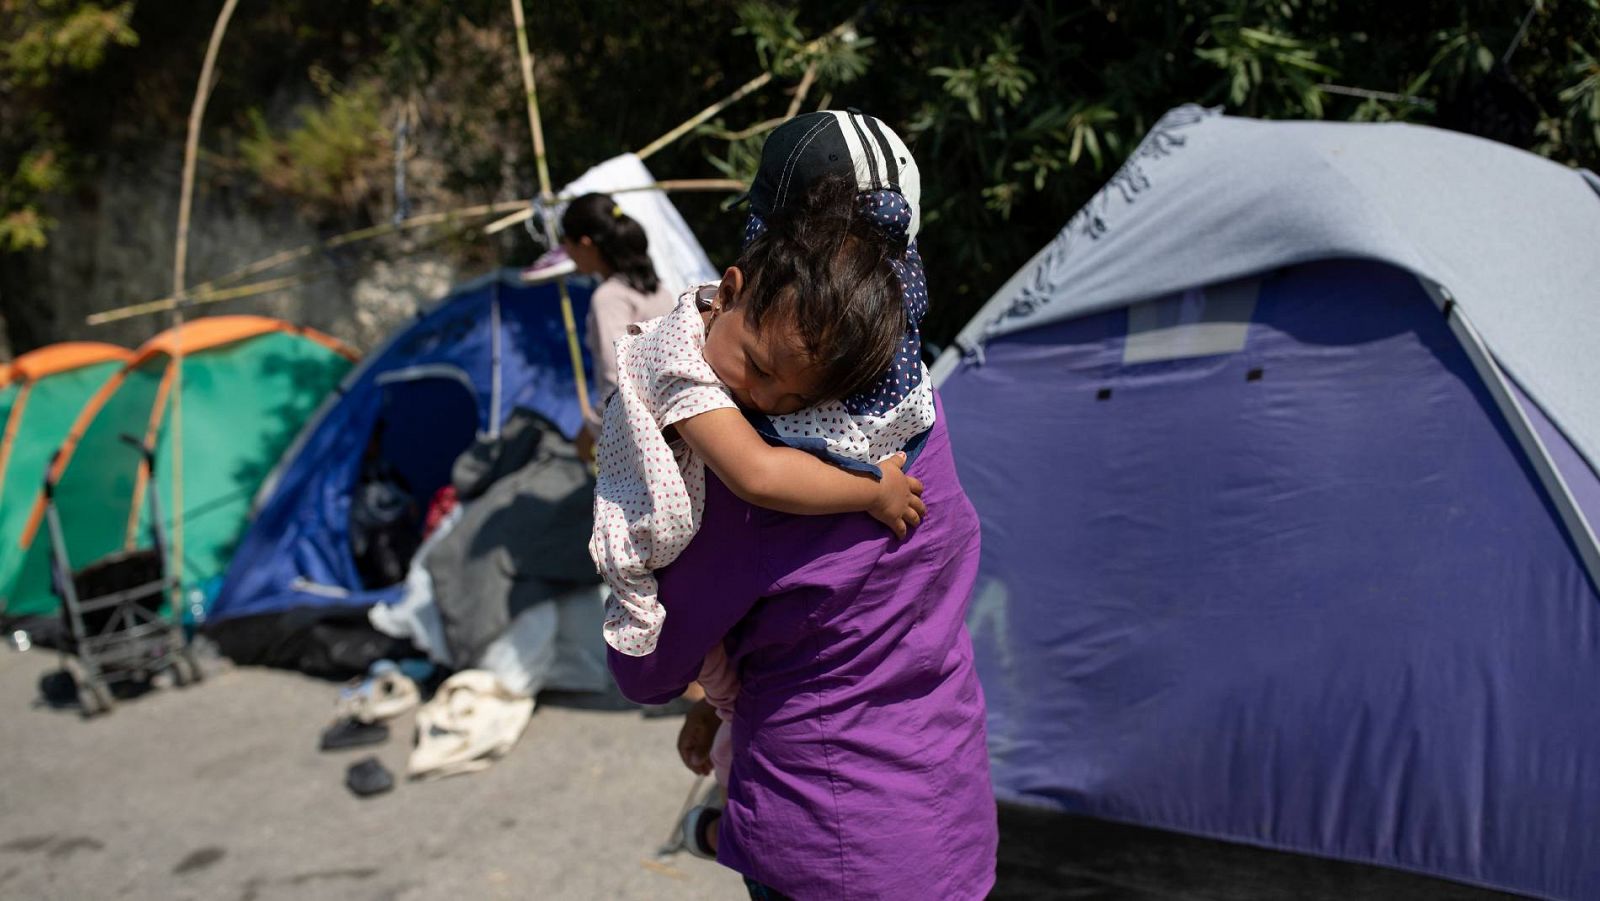 Grecia | Los refugiados de Lesbos sobreviven en los arcenes mientras rechazan ser internados de nuevo